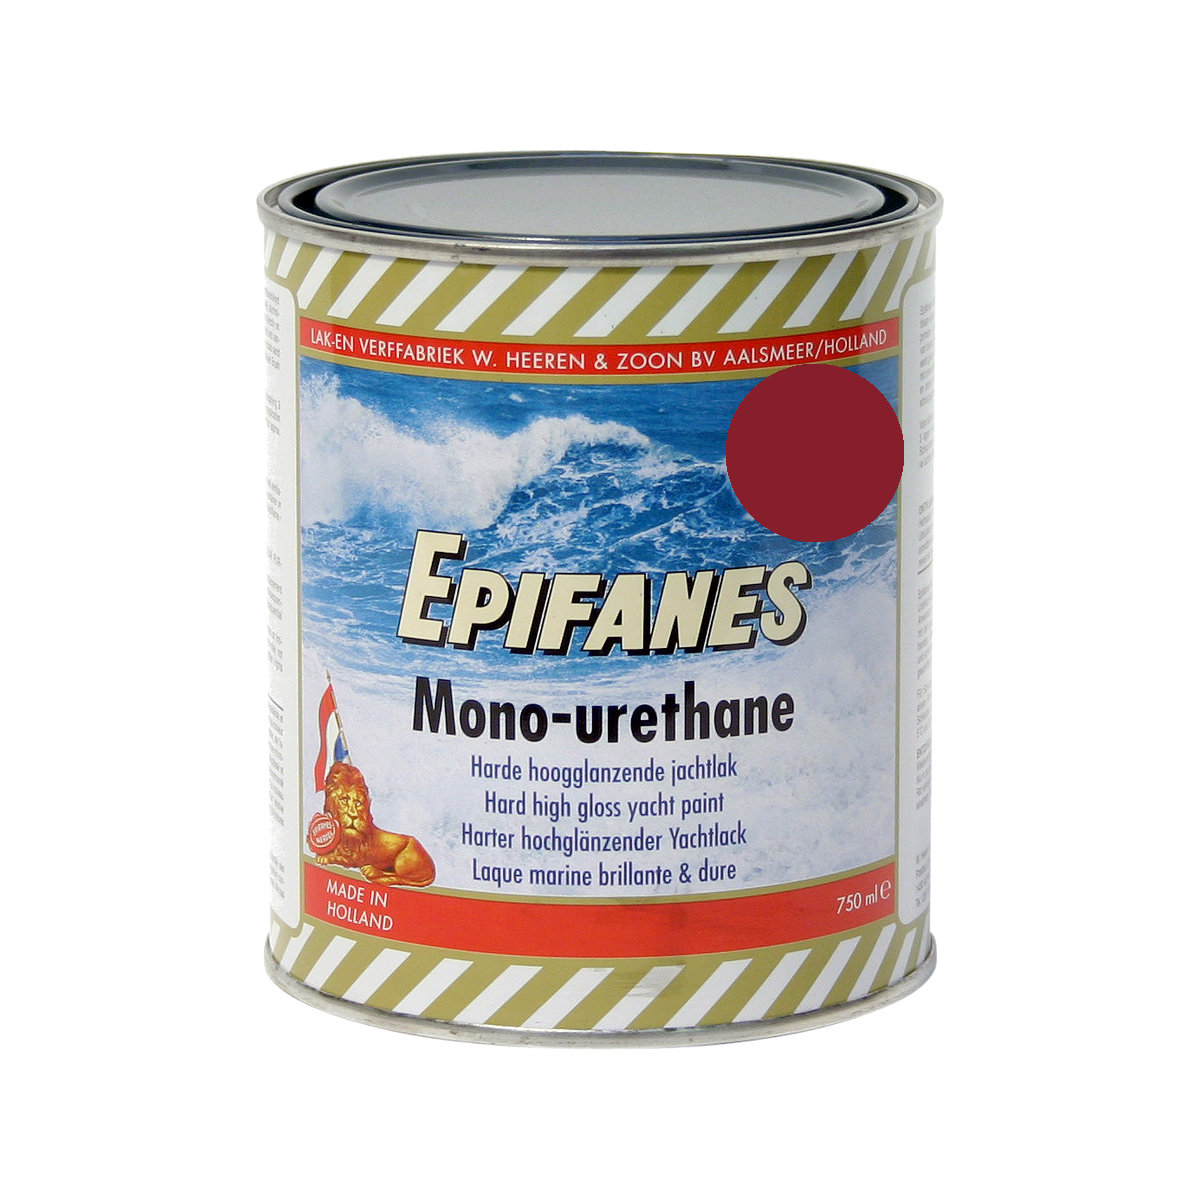 Epifanes mono-urethane jachtlak - donkerrood 3233, 750ml